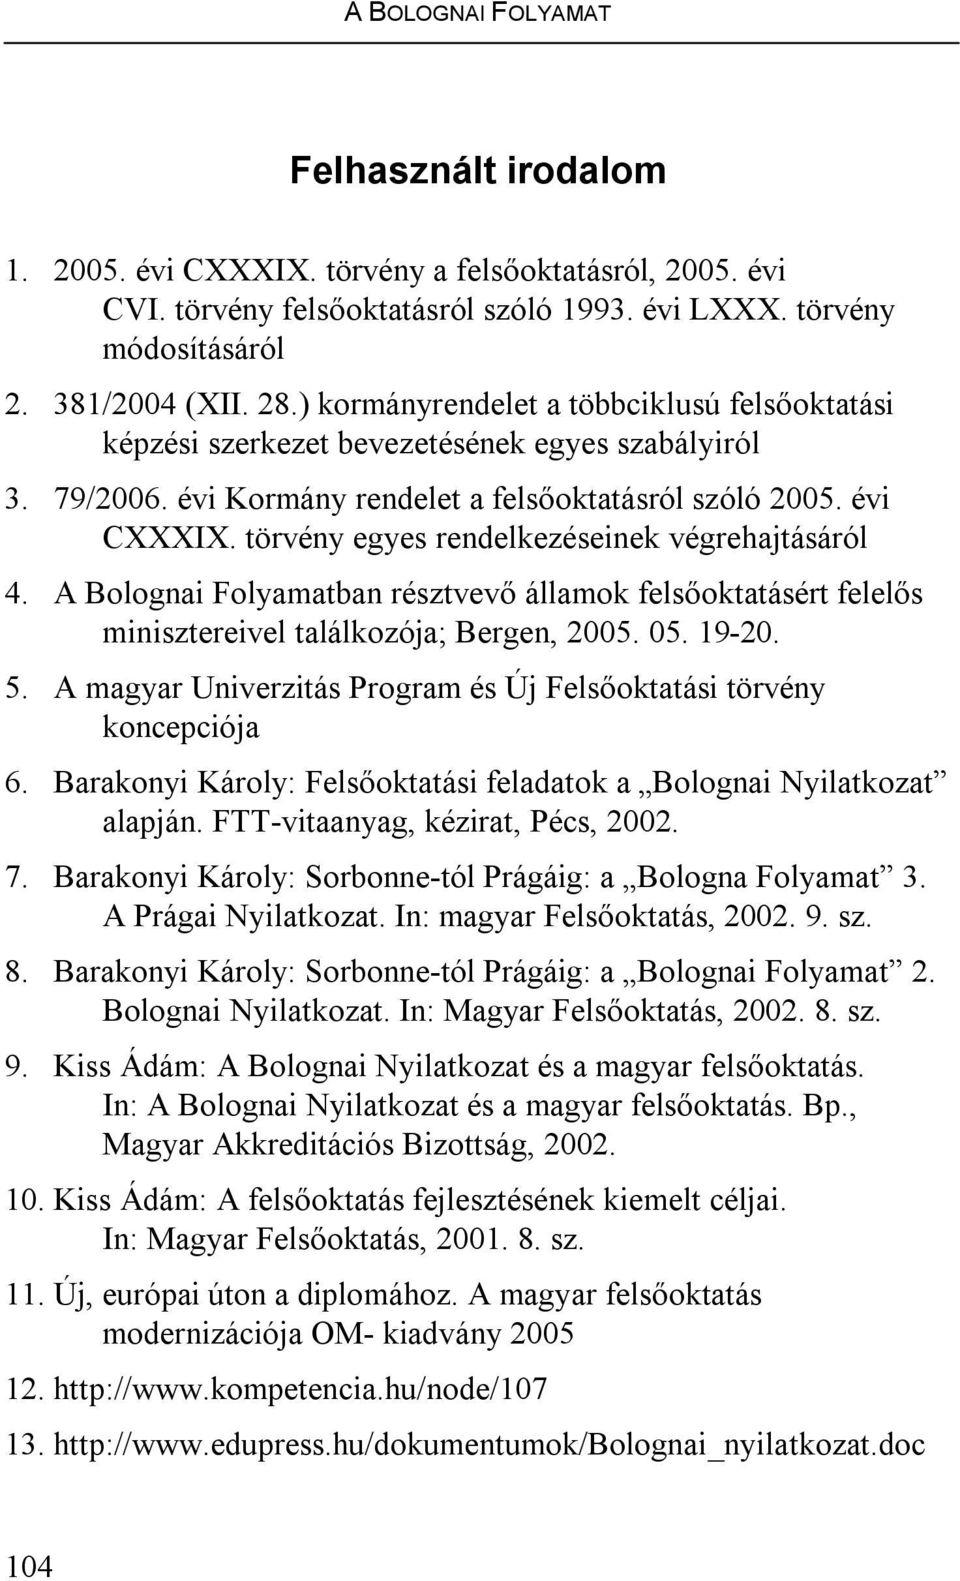 törvény egyes rendelkezéseinek végrehajtásáról 4. A Bolognai Folyamatban résztvevő államok felsőoktatásért felelős minisztereivel találkozója; Bergen, 2005. 05. 19-20. 5.